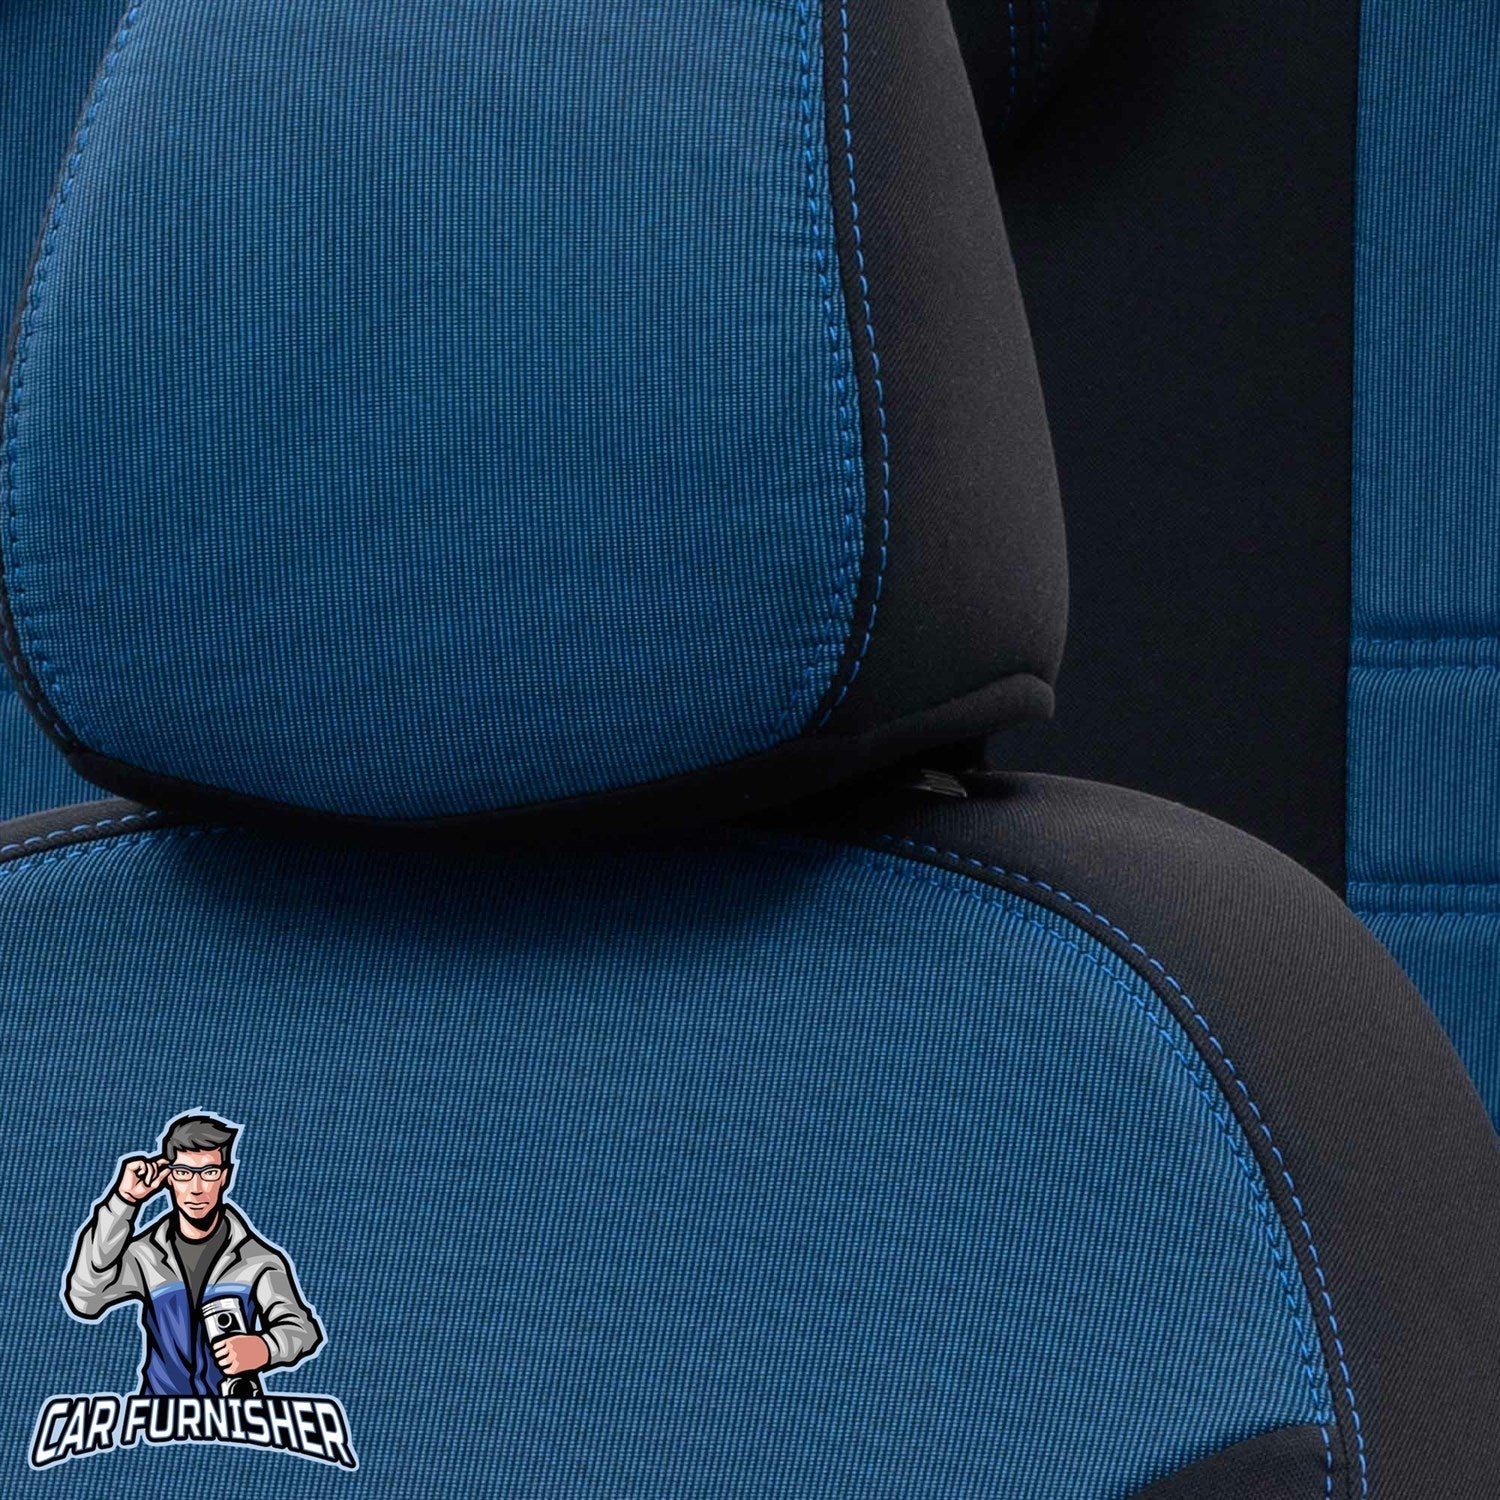 Chevrolet Captiva Seat Cover Original Jacquard Design Blue Jacquard Fabric